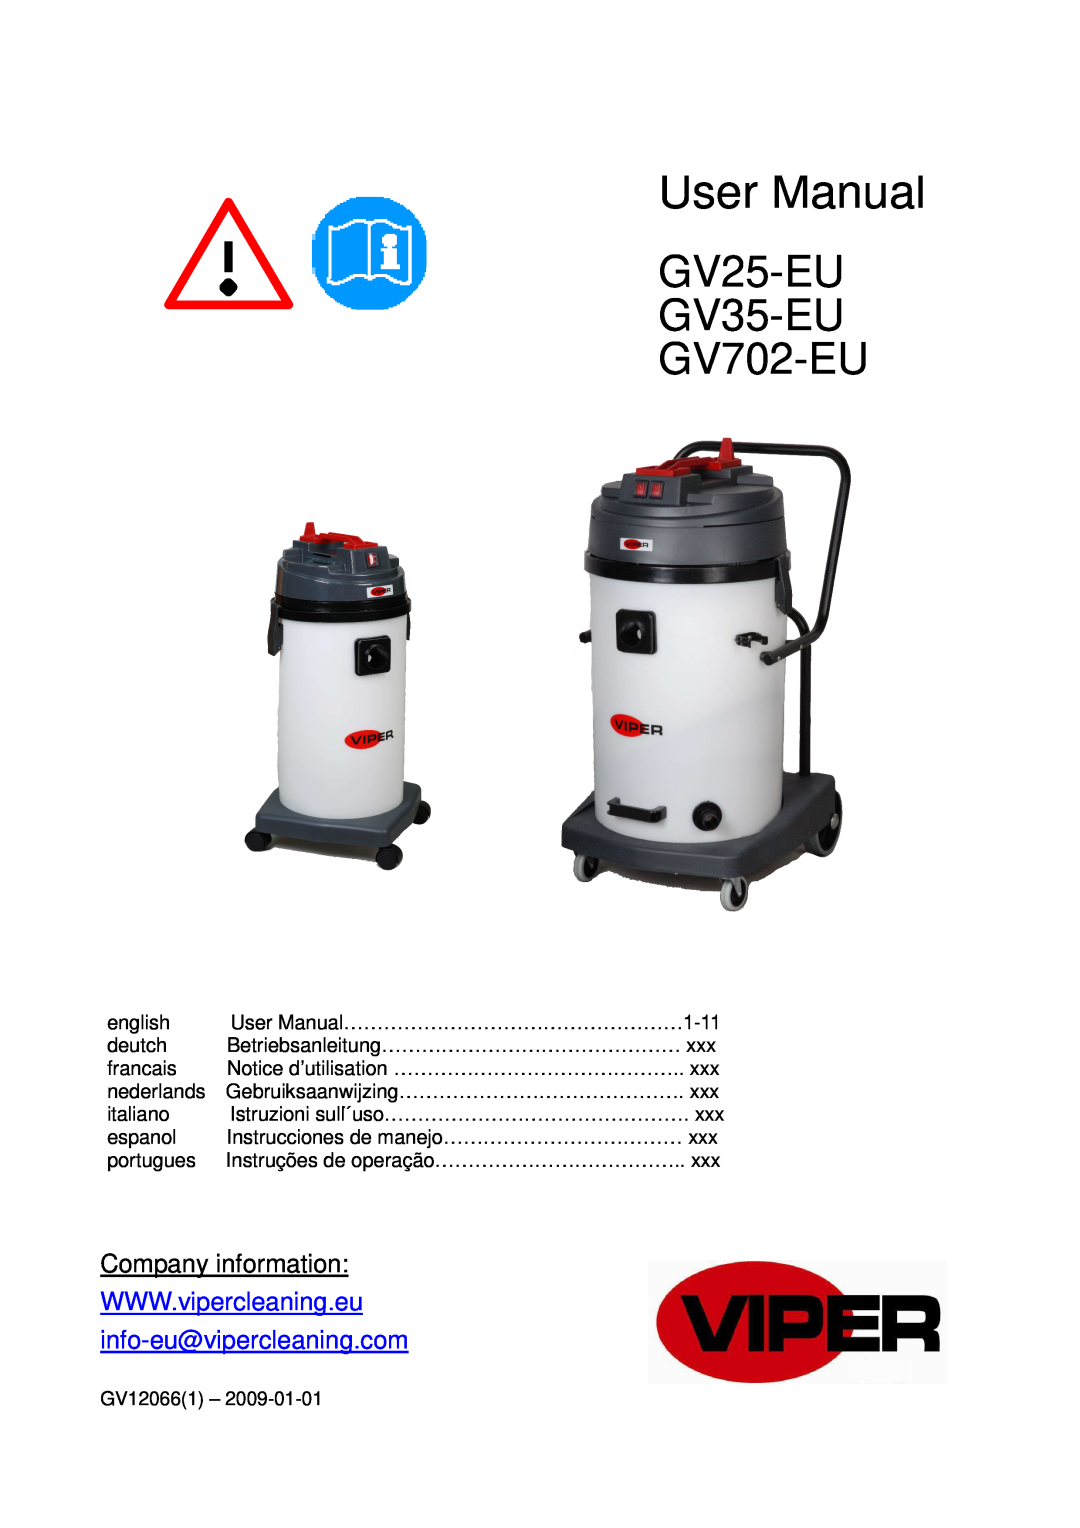 Viper user manual GV25-EU GV35-EU GV702-EU, Company information 